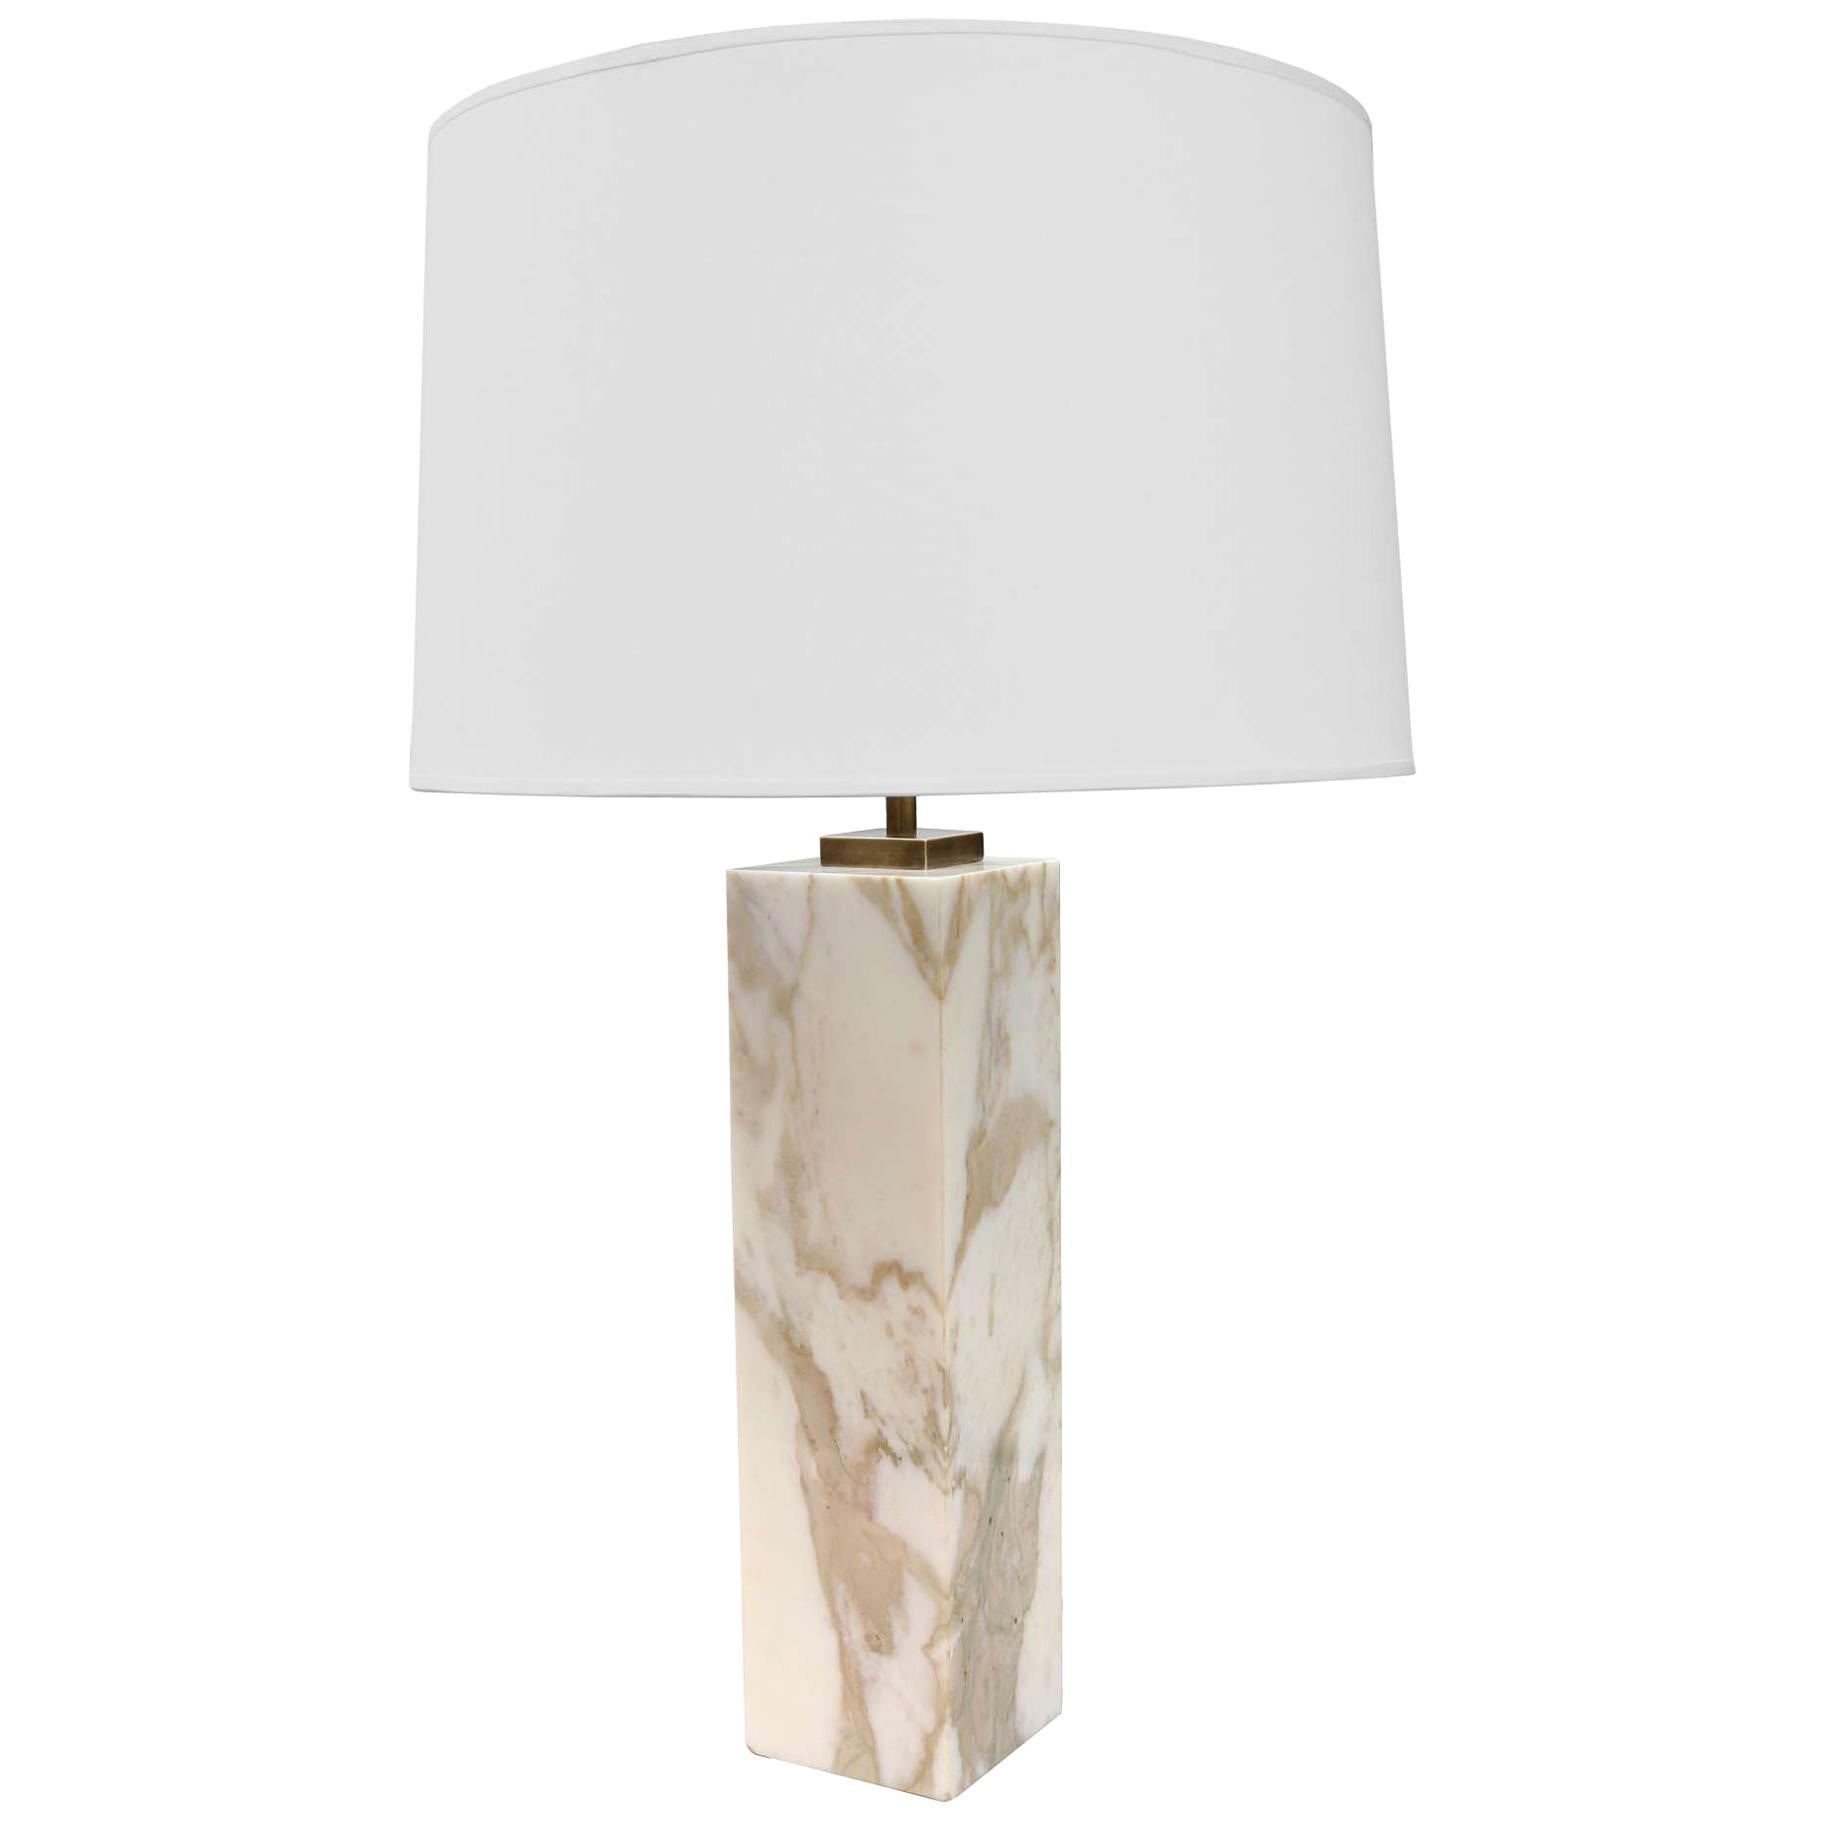 Single Table Lamp Designed by T.H. Robsjohn-Gibbings for Hansen Lighting Co.